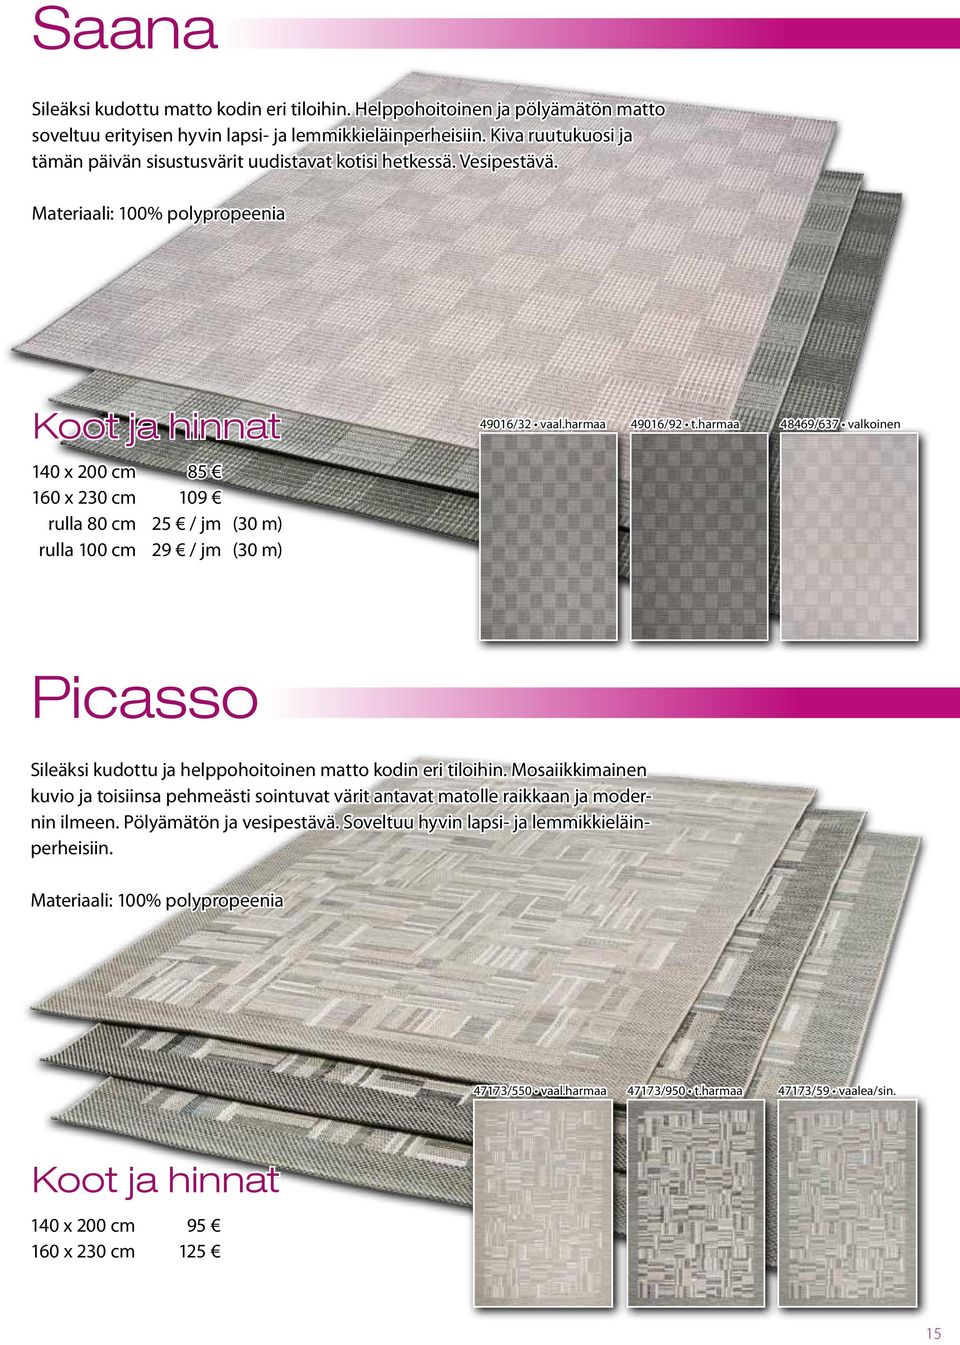 harmaa 49016/92 t.harmaa 48469/637 valkoinen Picasso Sileäksi kudottu ja helppohoitoinen matto kodin eri tiloihin.